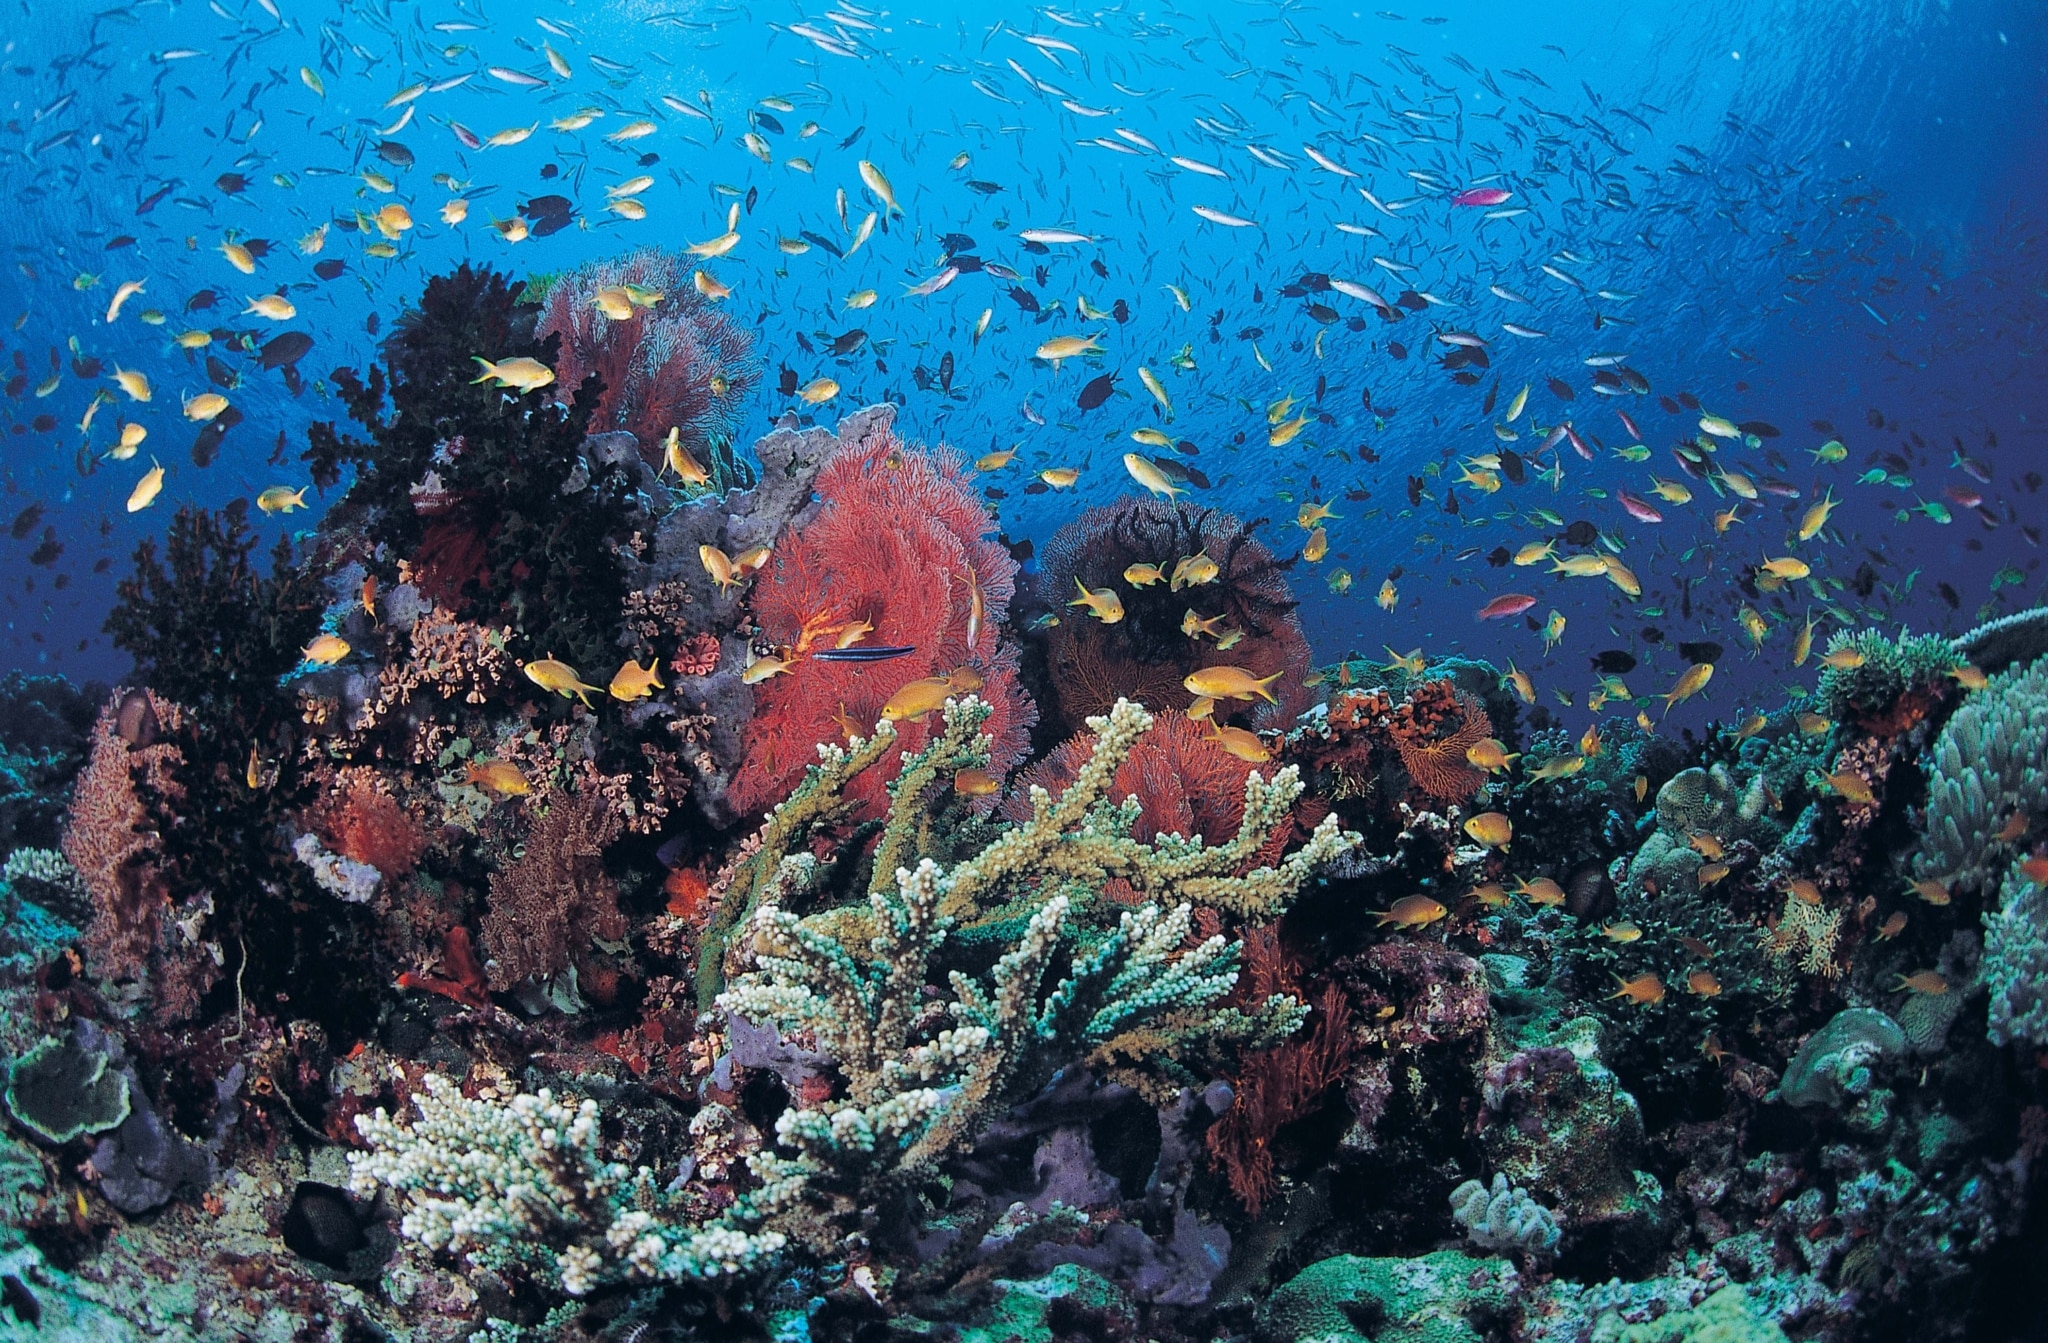 「海の自然資本と投資家の動きを知る」-連続ウェビナー「海の自然資本とESG投融資」 第1回報告-